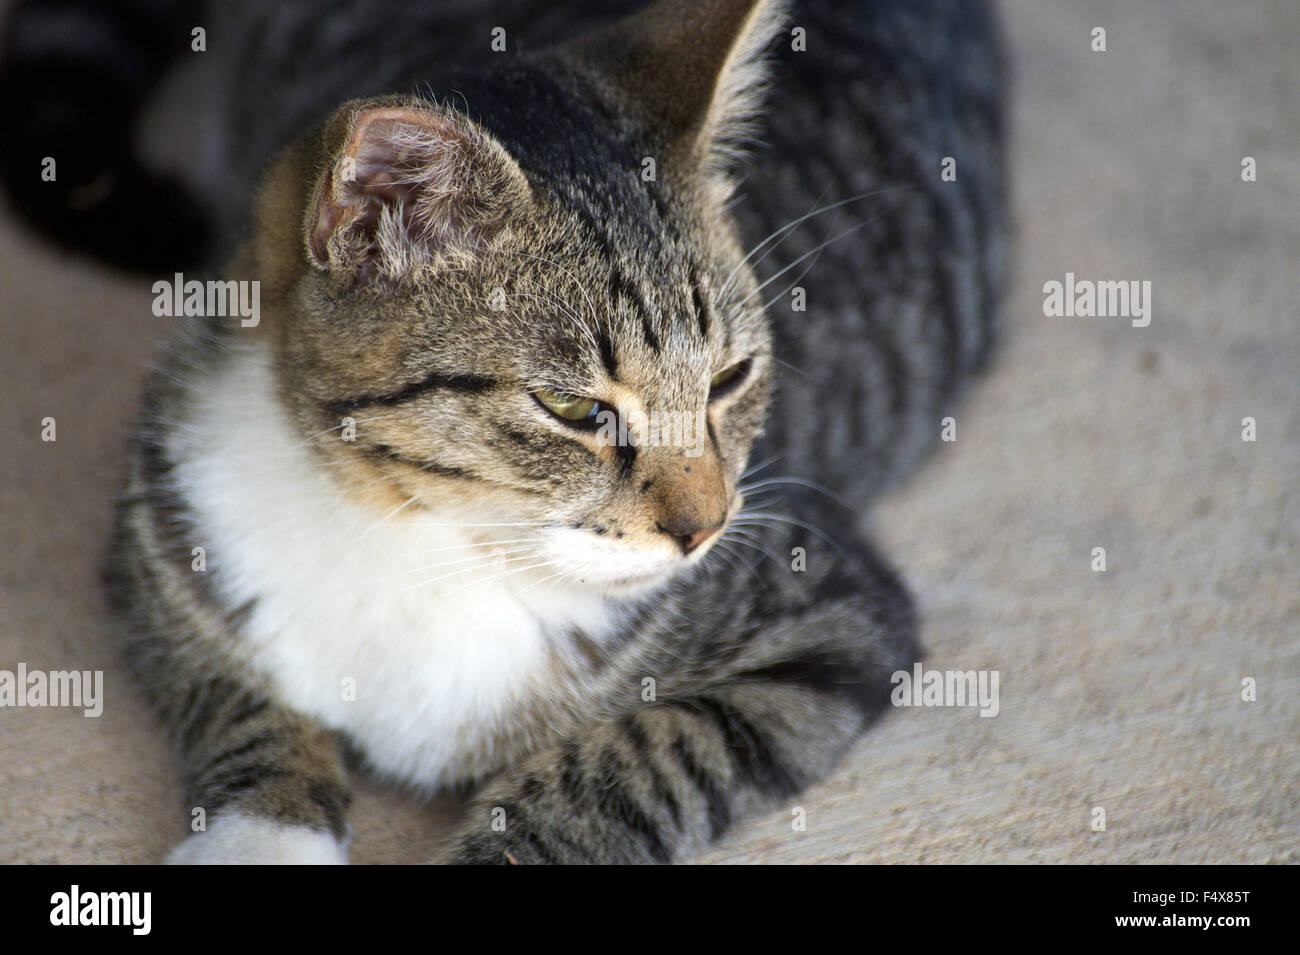 A kitten Stock Photo